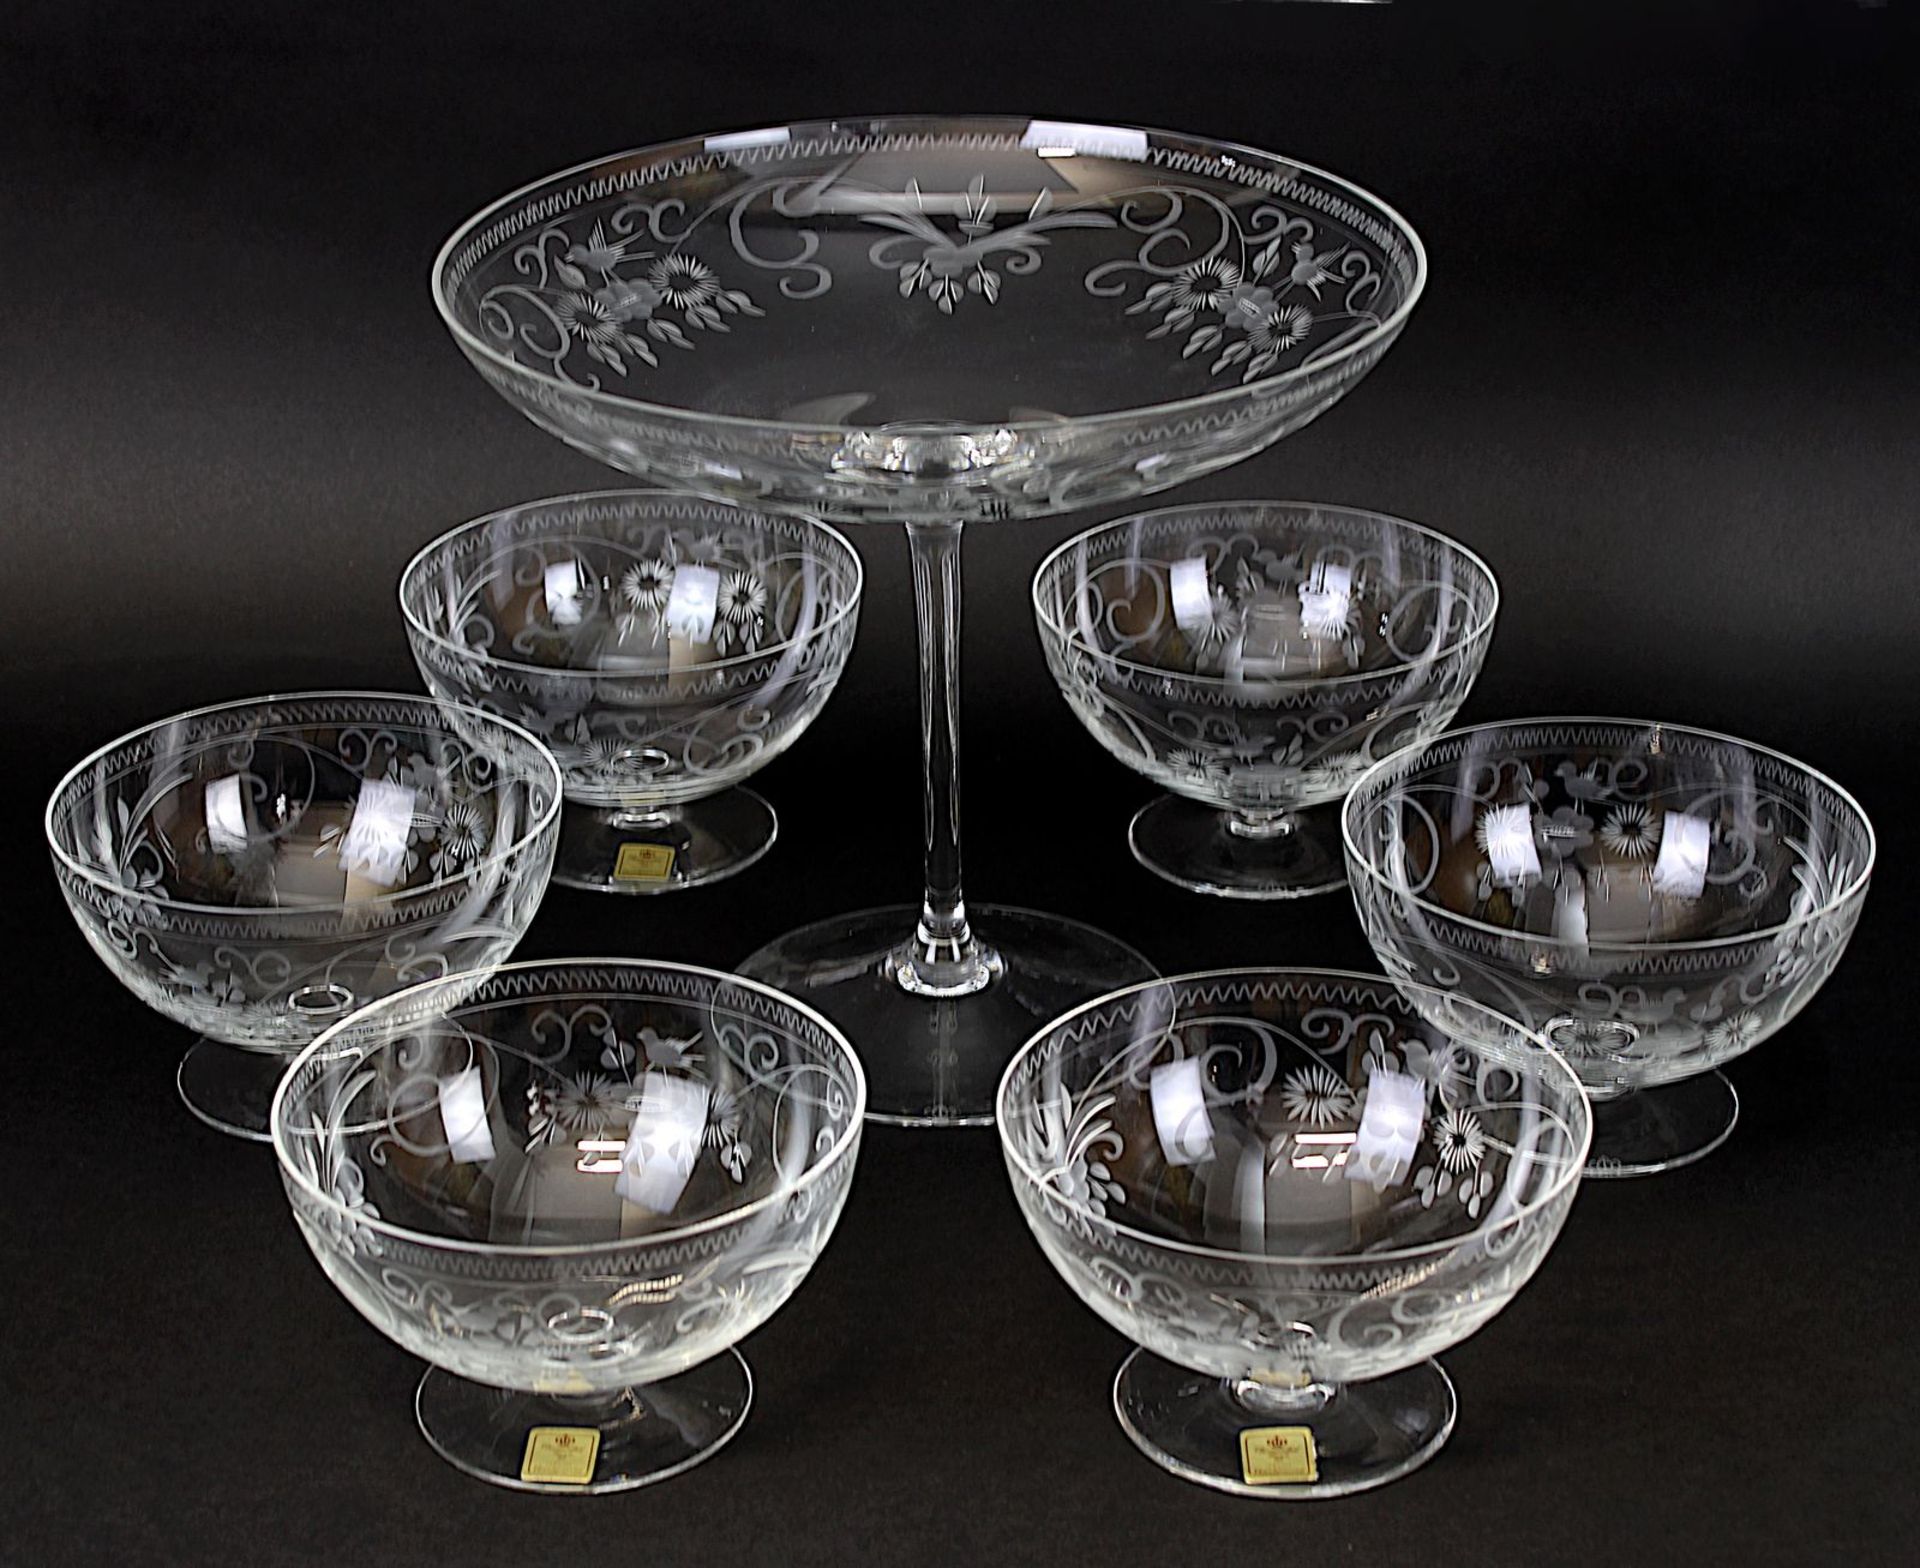 Theresiental Dessert-Fußschale mit sechs passenden Schalen, Klarglas mit floralem Schliff, mit